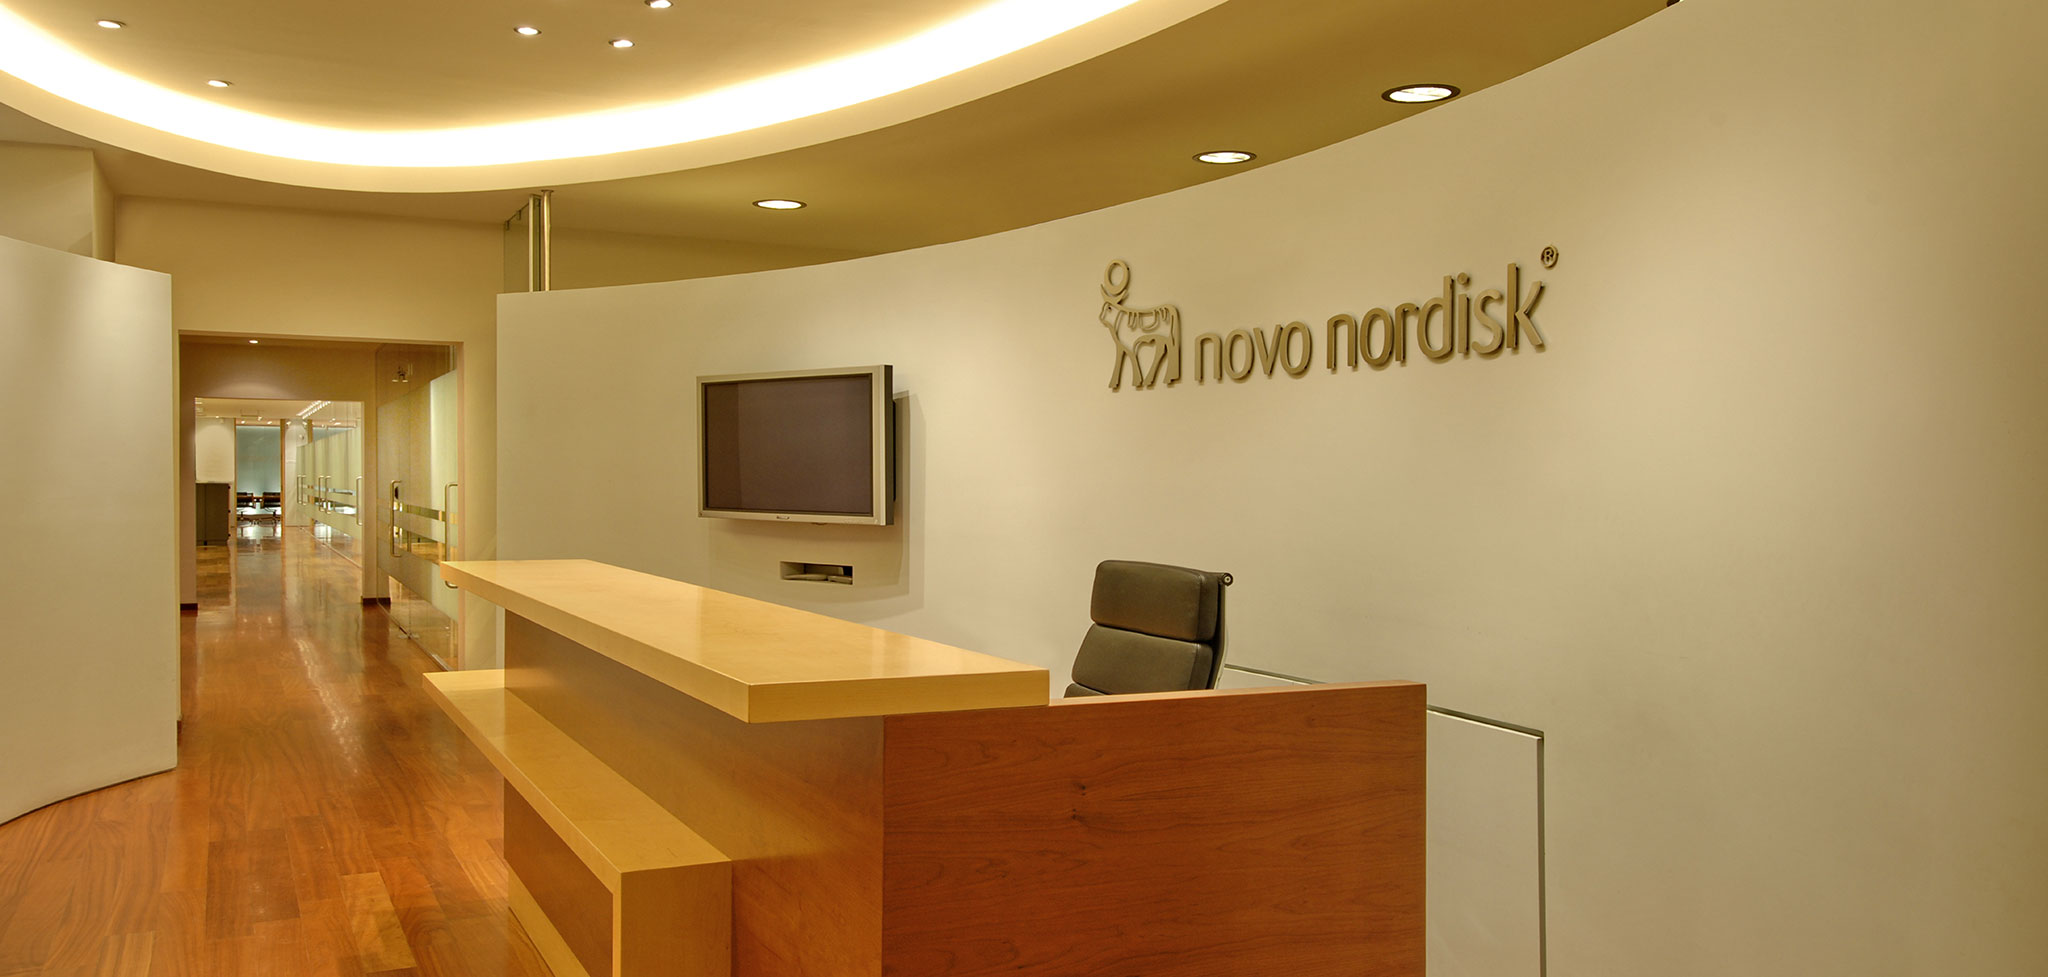 Διαρρύθμιση γραφείων της φαρμακευτικής εταιρείας Novo Nordisk A/S